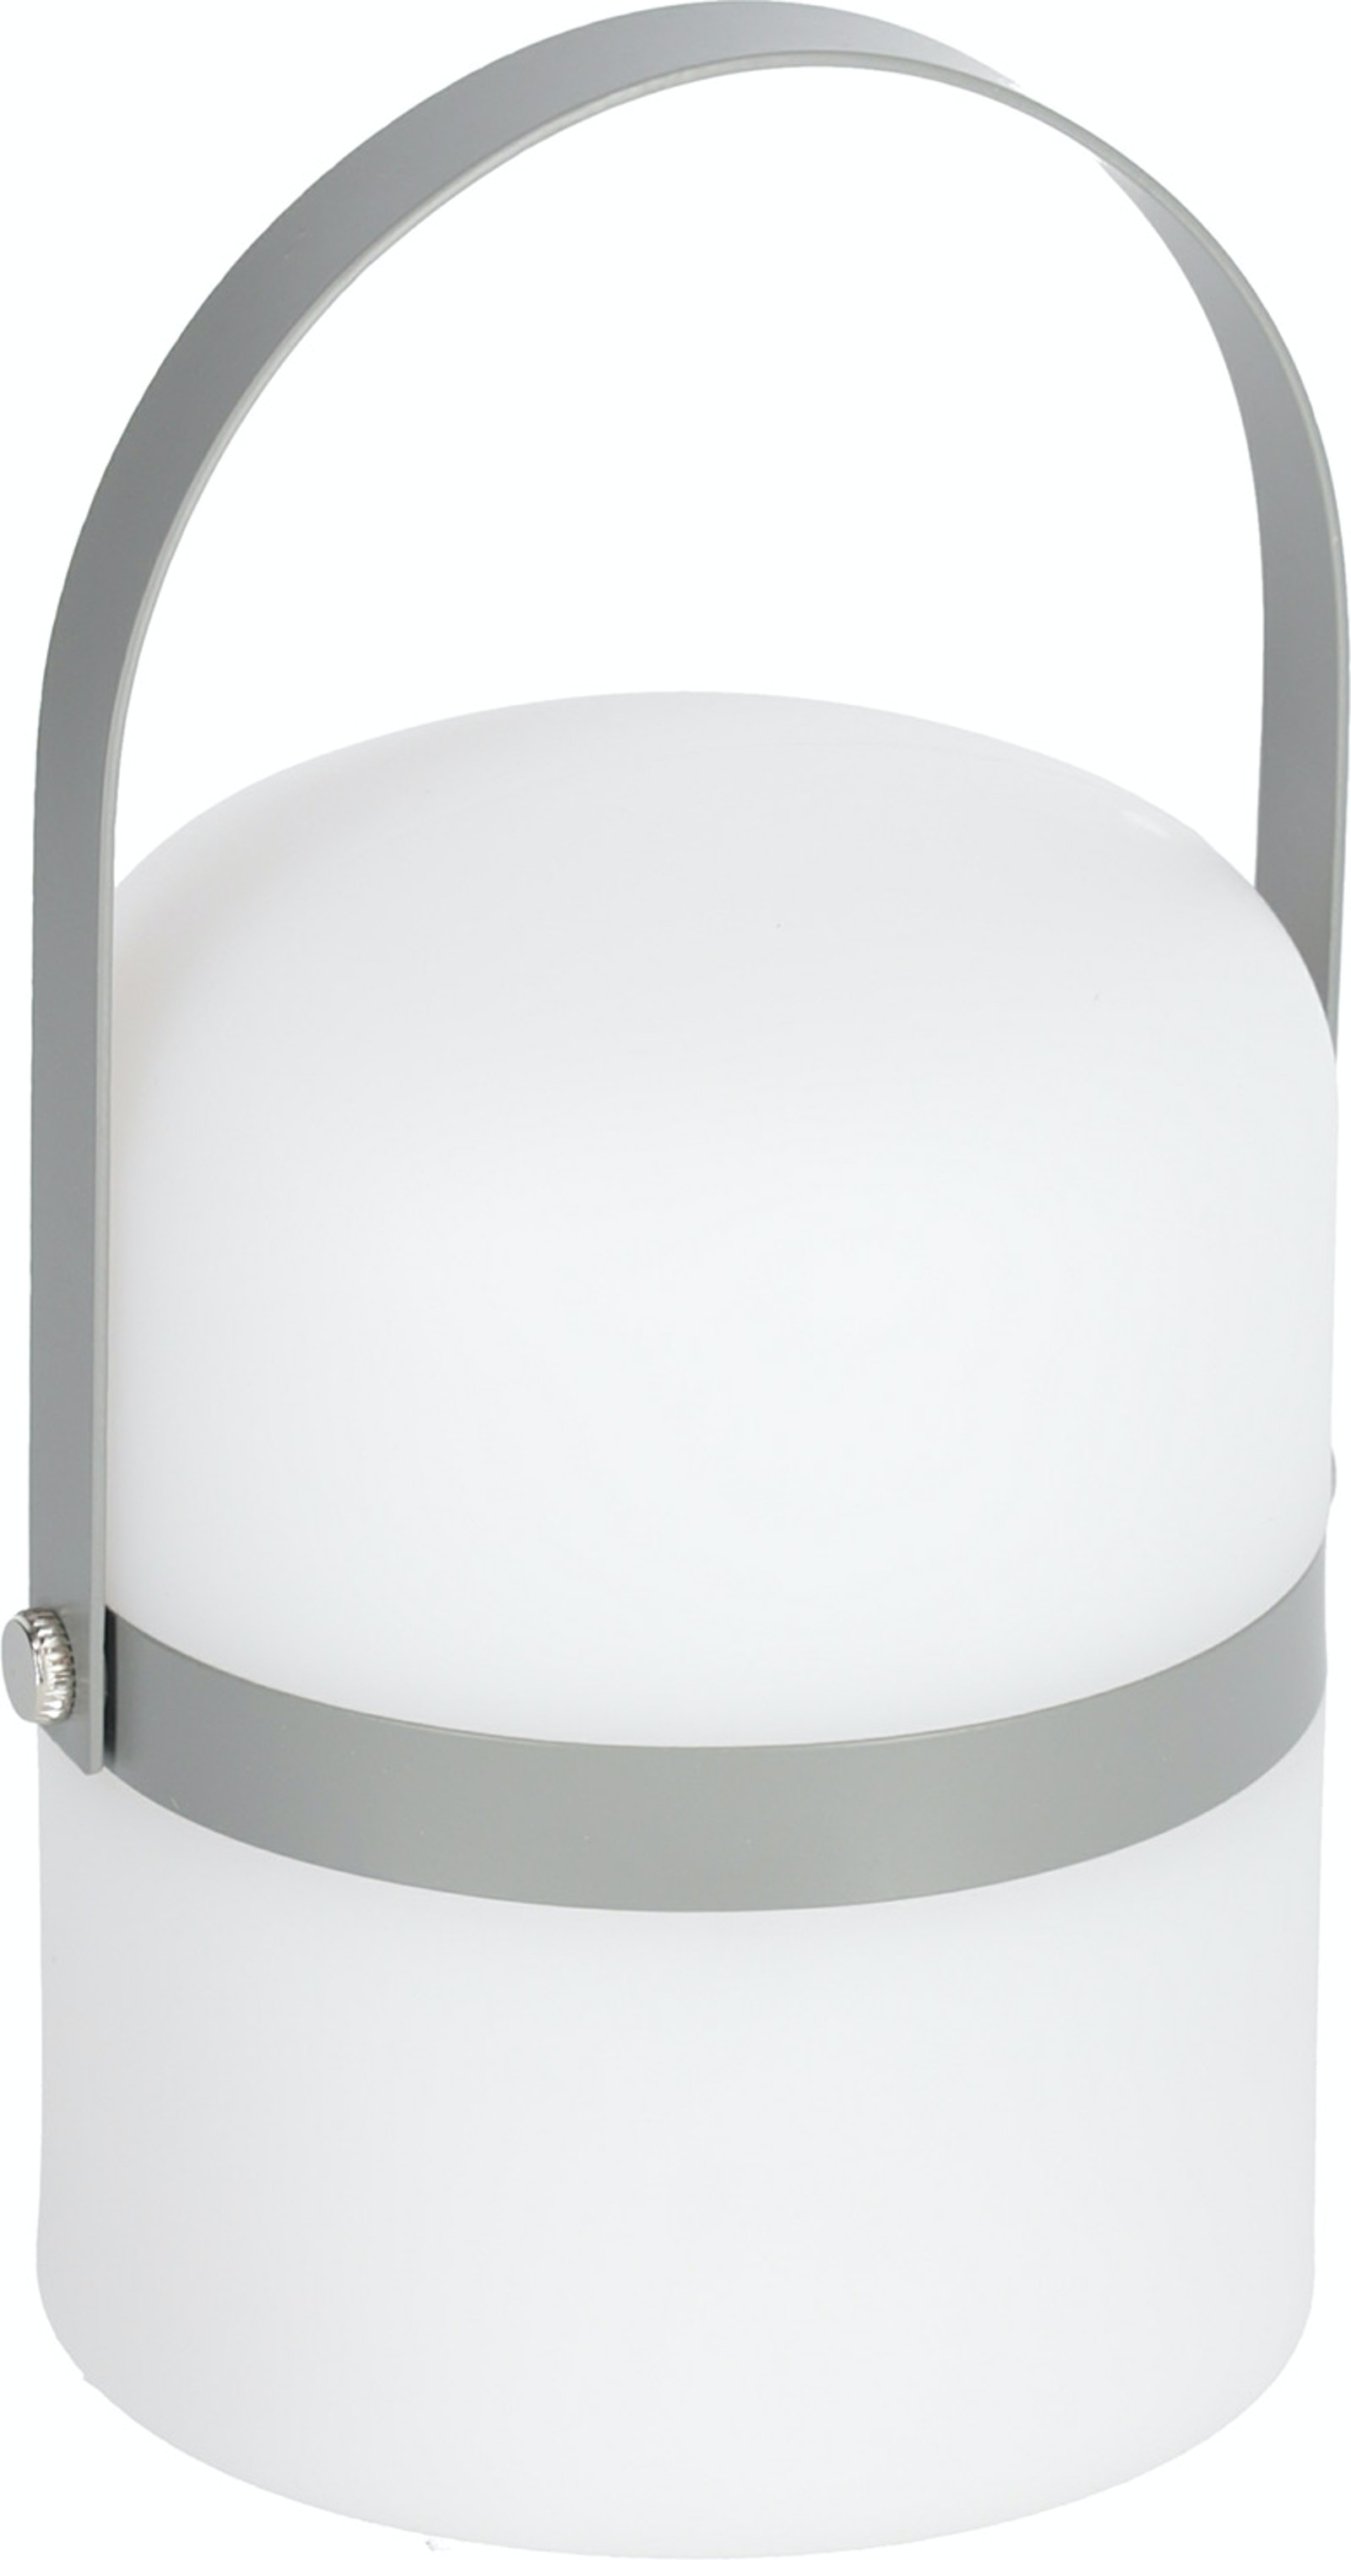 LAFORMA Janvir genopladelig bordlampe - hvid plast og lysegrå metal